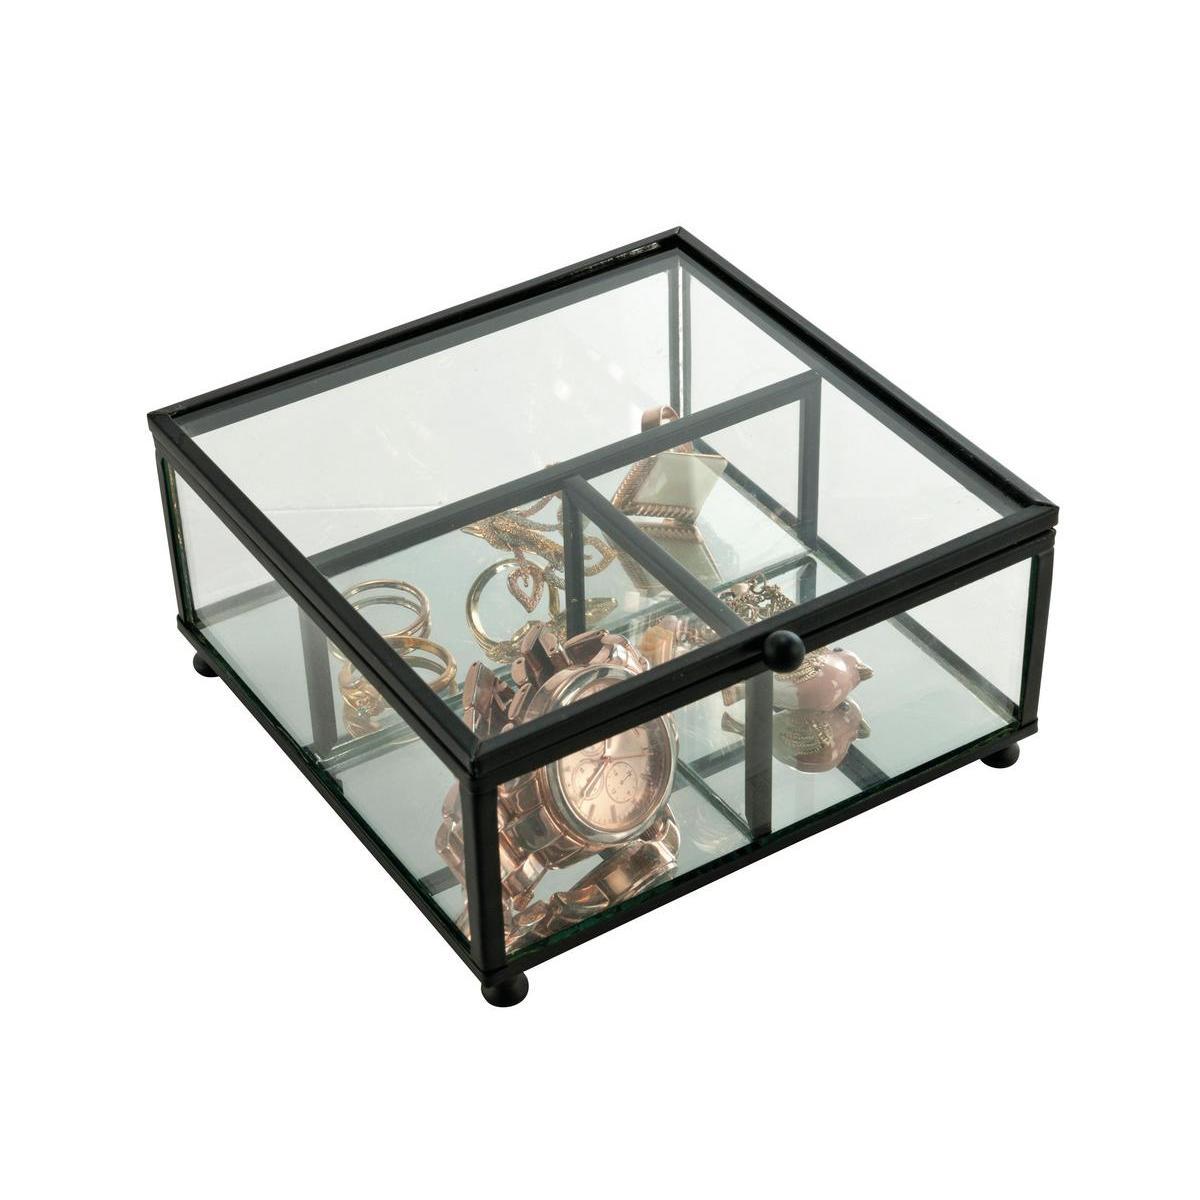 Coffret design 3 compartiments - Métal et verre - 13,5 x 13,5 x H 6,5 cm - Noir et transparent